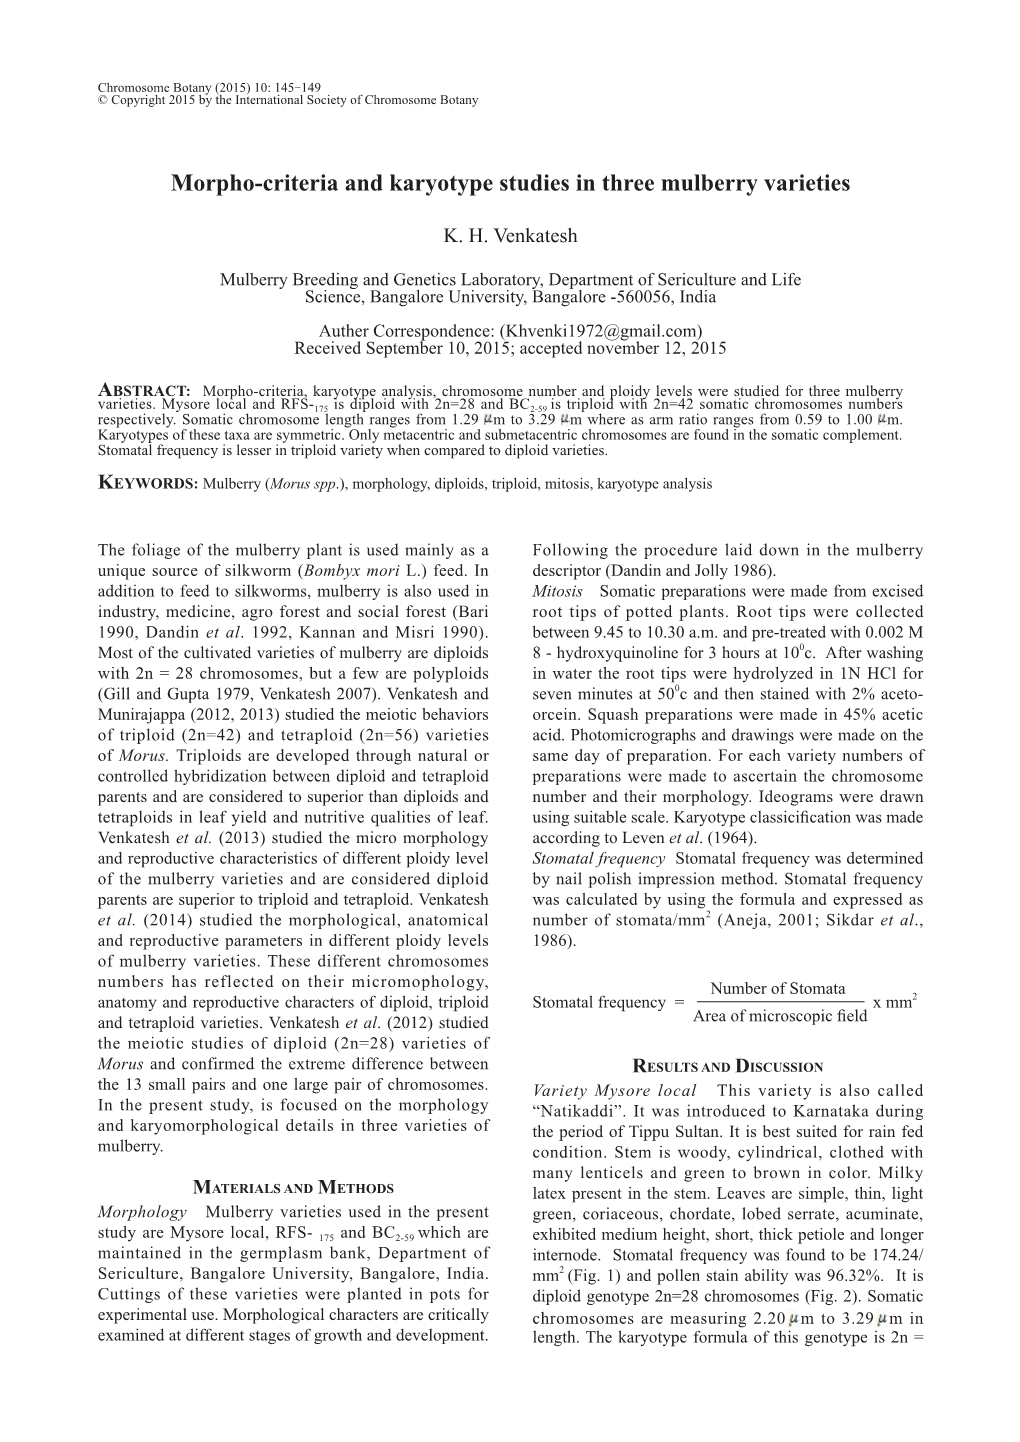 Morpho-Criteria and Karyotype Studies in Three Mulberry Varieties